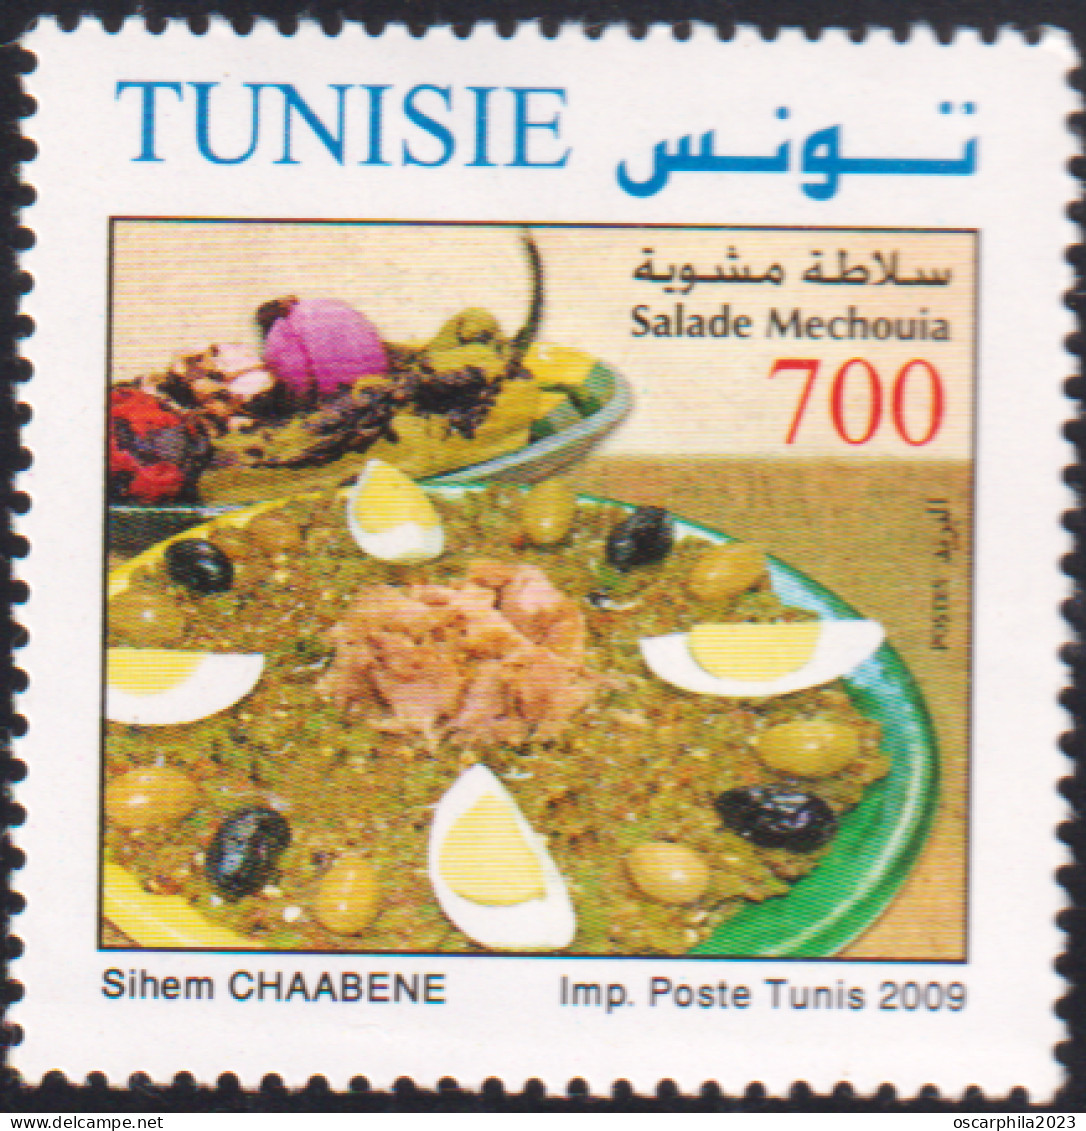 2009- Tunisie - Y&T 1648 -  Plats De Tunisie - Salade Mechouia - 1V MNH***** - Tunisia